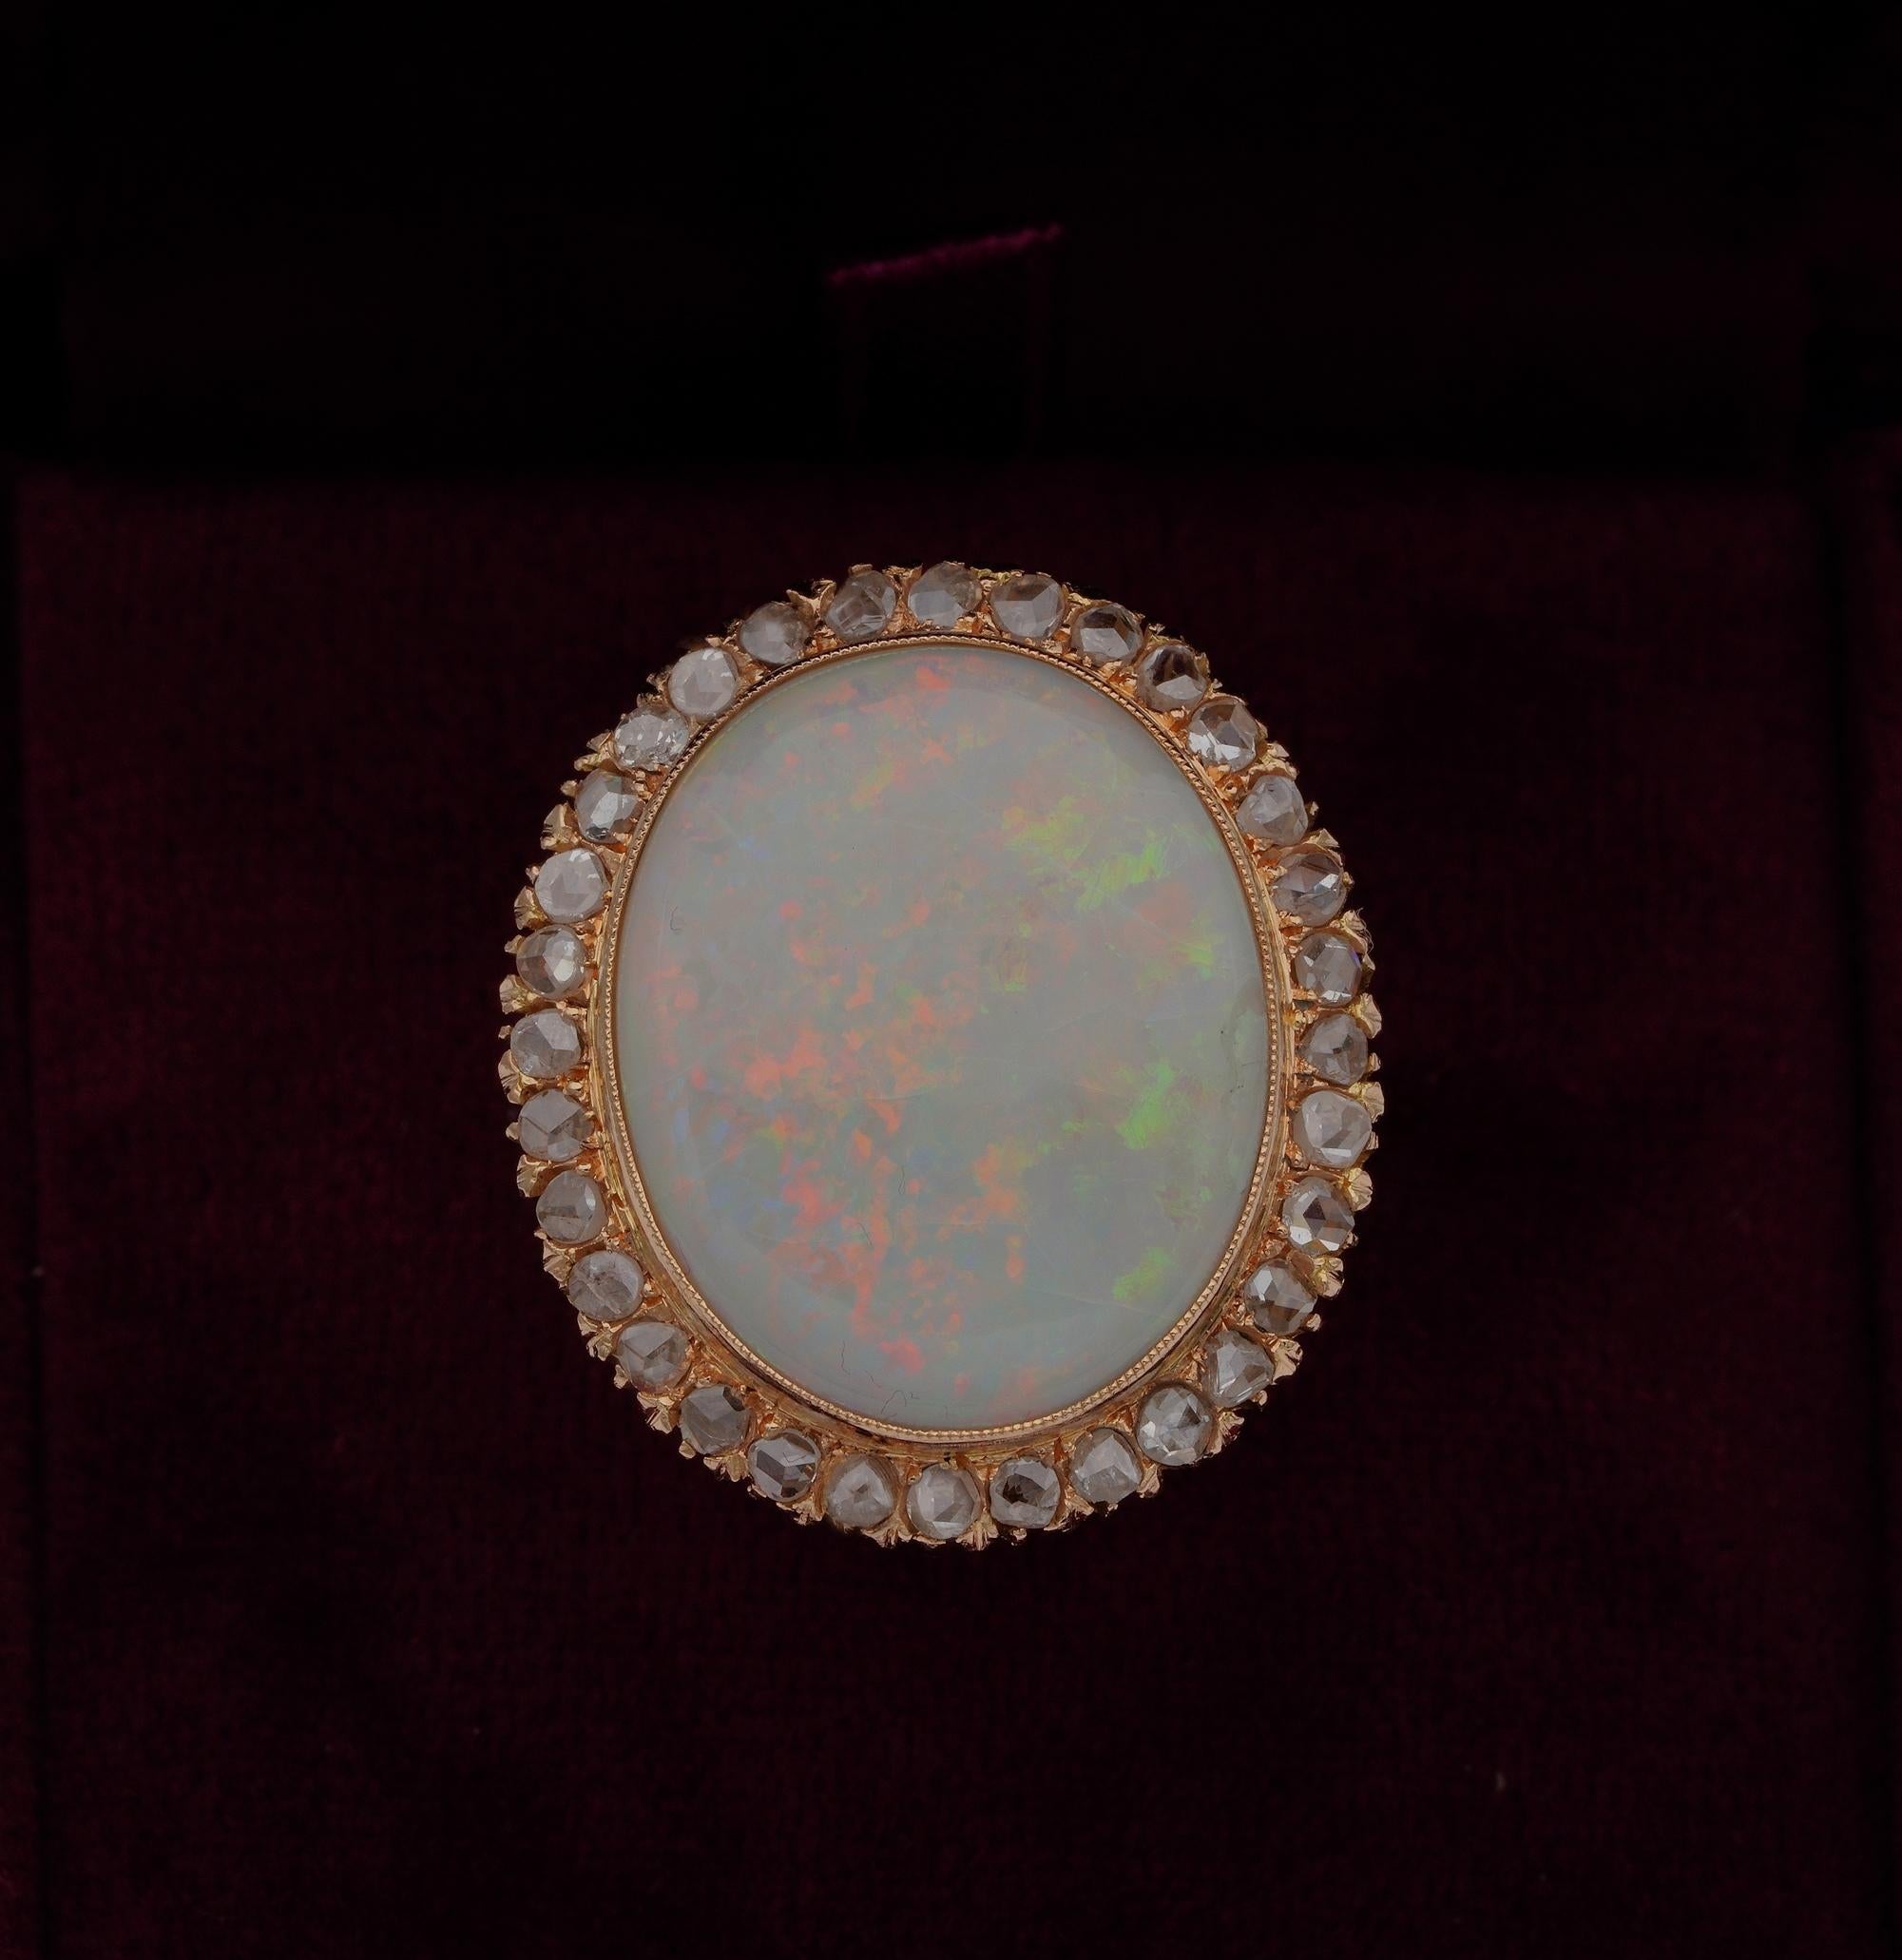 Dieser bemerkenswerte Retro Opal & Diamant Ring ist 1940 ca
Gekonnt handgefertigt aus massivem 18 KT Gold
Elegantes Design, bestehend aus einem großen Opal in der Mitte, der in einem Halo aus Diamanten im Rosenschliff eingefasst ist, und schönen